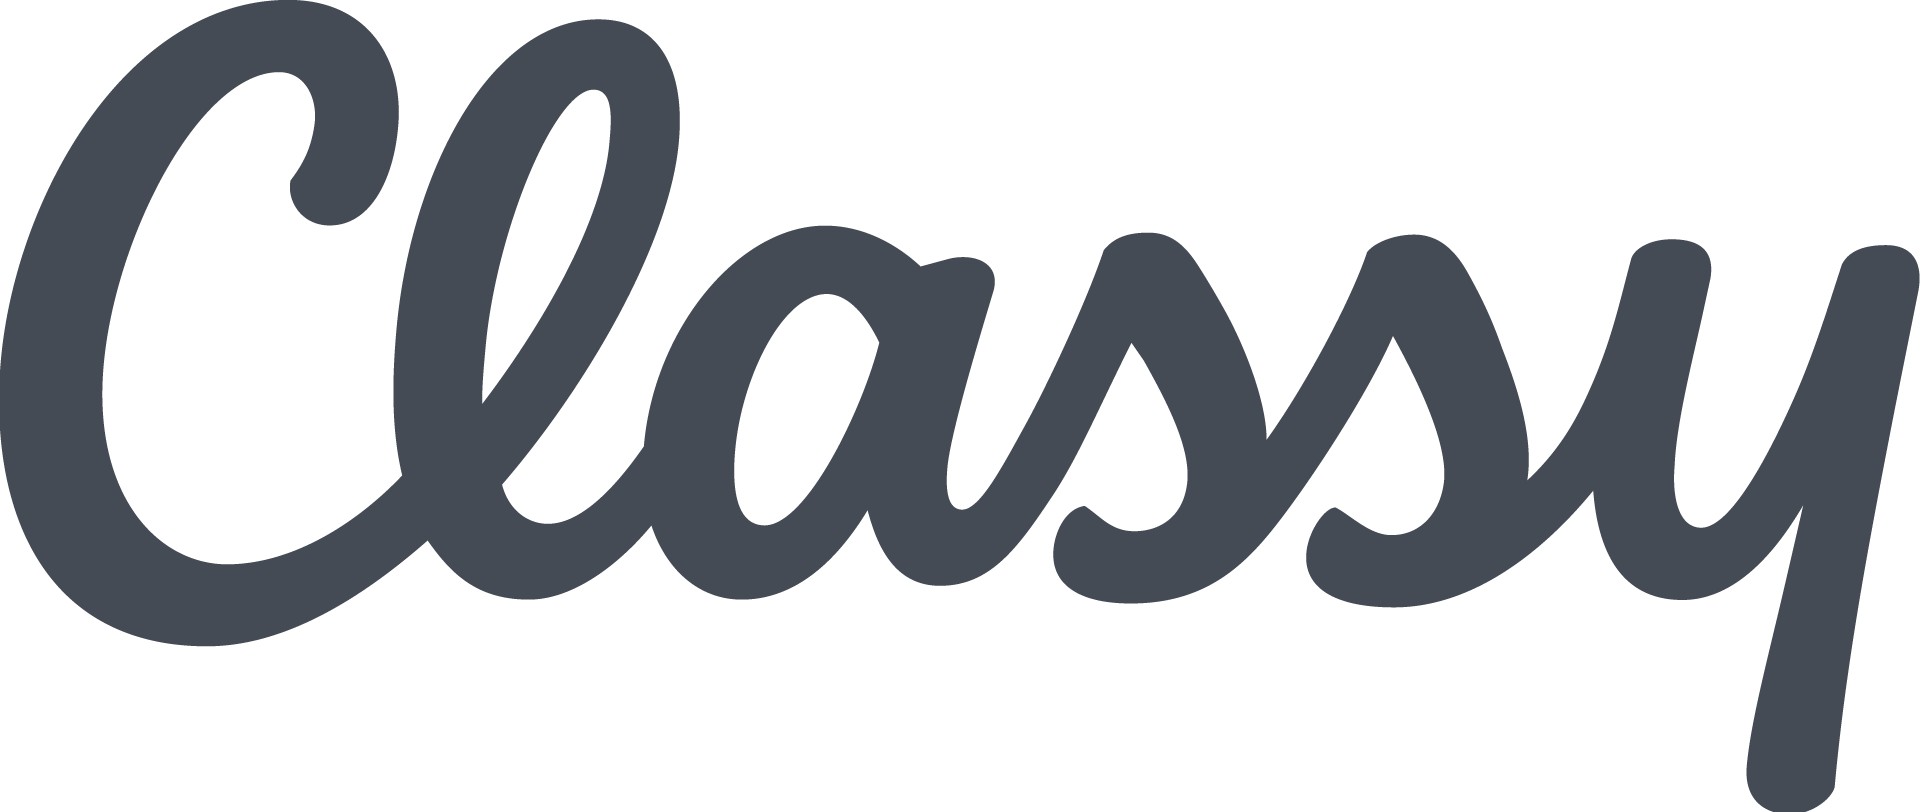 Classy Company Logo